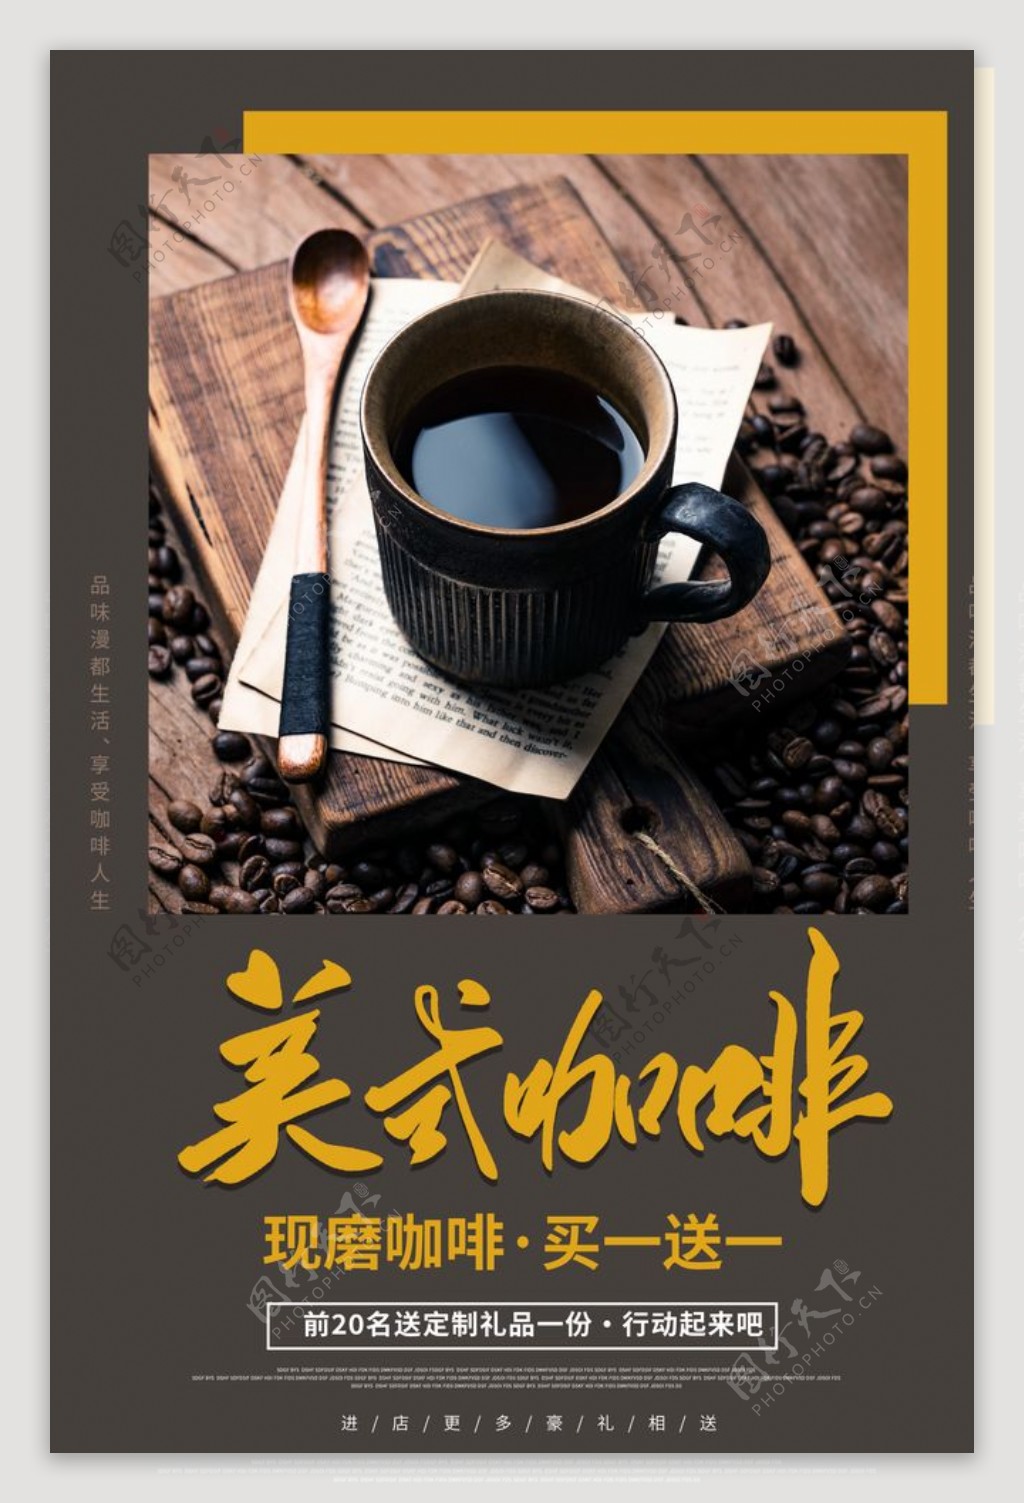 美食咖啡活动宣传海报素材图片